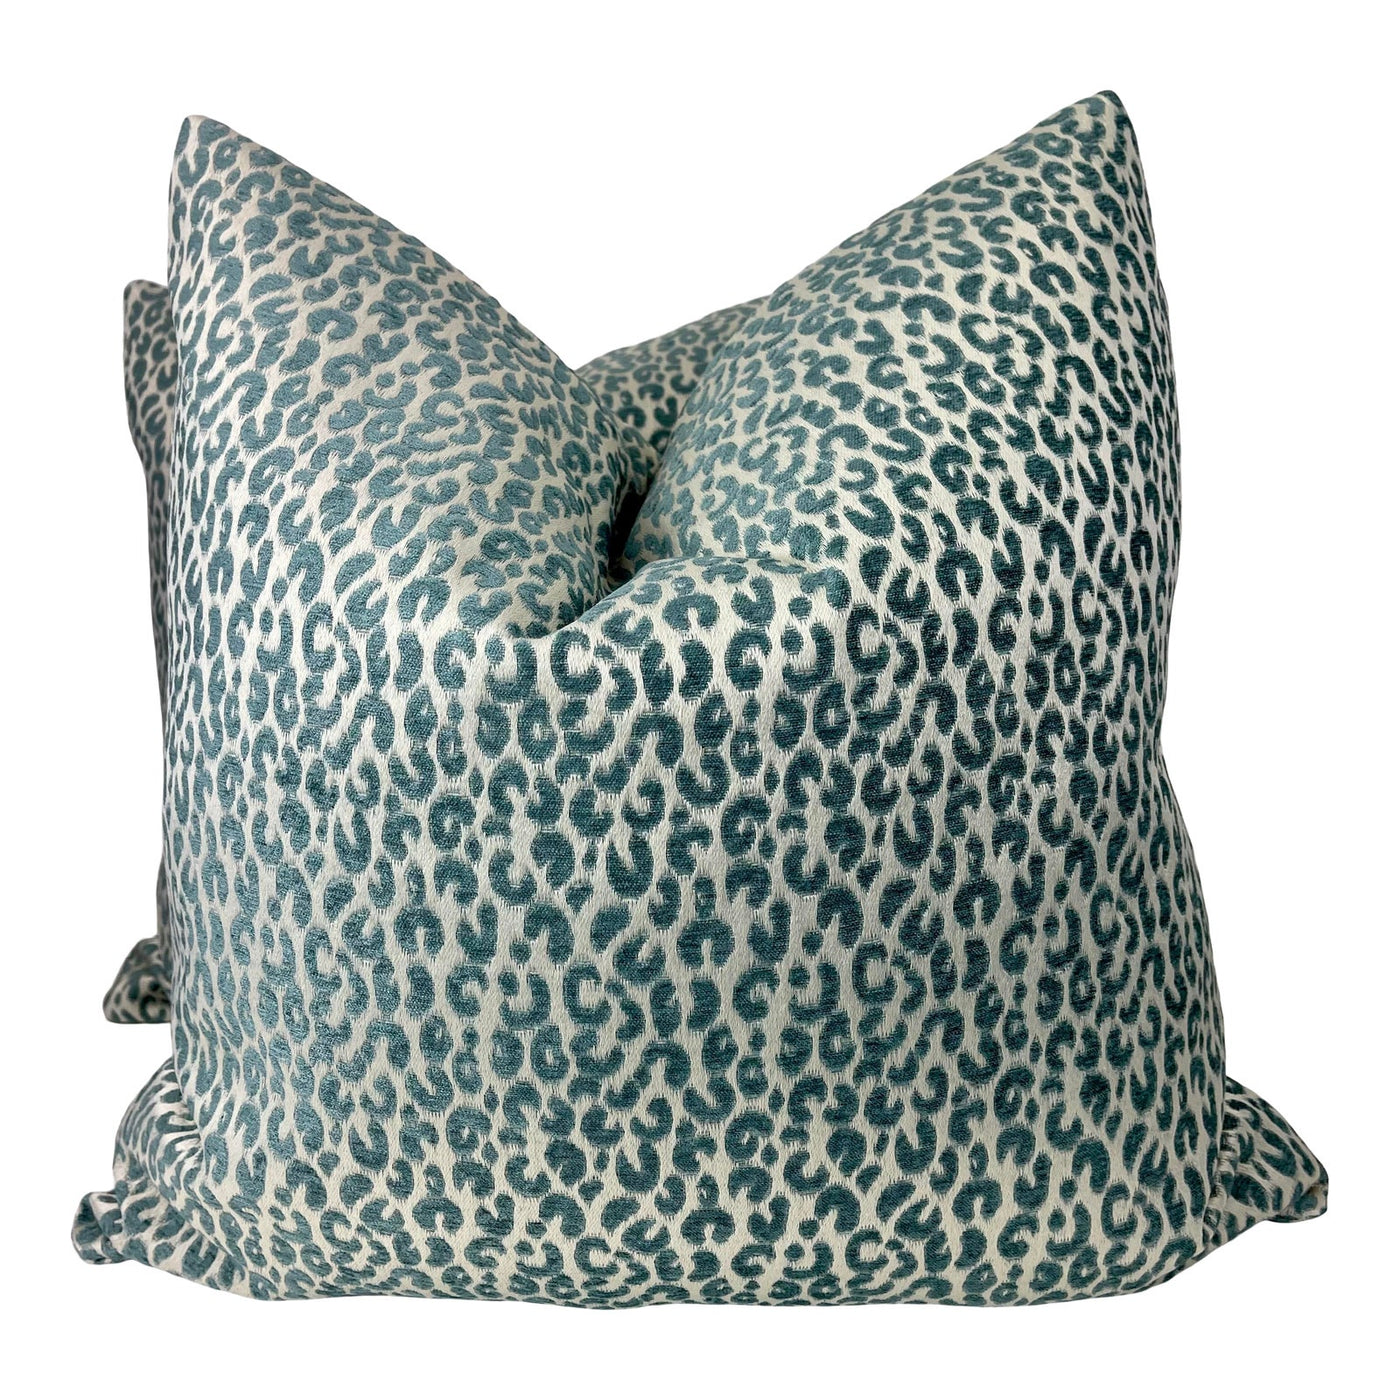 https://shop.trellishomedesign.com/cdn/shop/products/cheetah-velvet-in-aqua-on-cream-22-pillows-a-pair-4775_1400x.jpg?v=1640021741